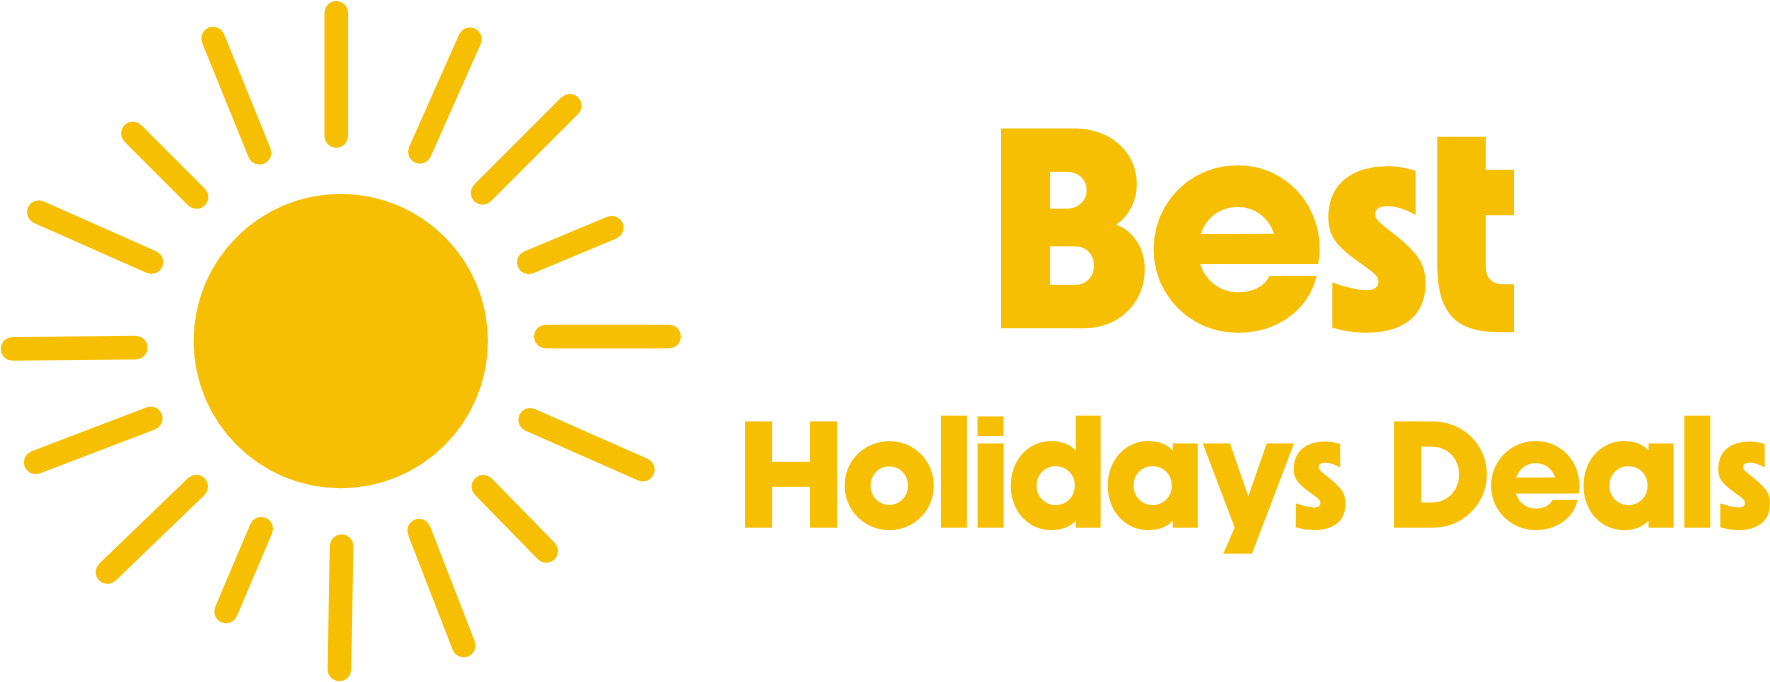 Best Holidays Deals logo